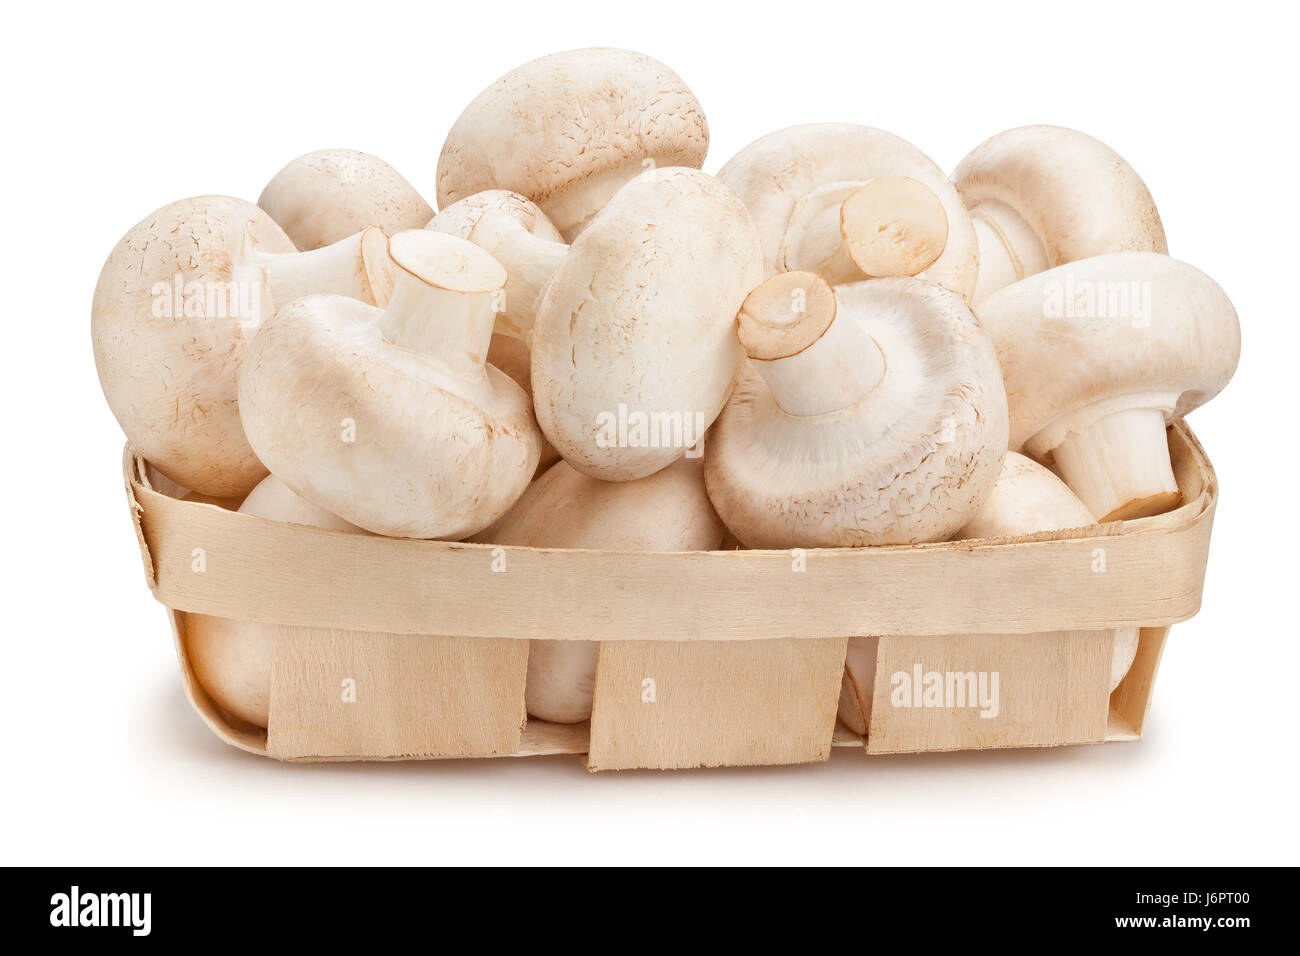 mushrooms basket isolated Stock Photo